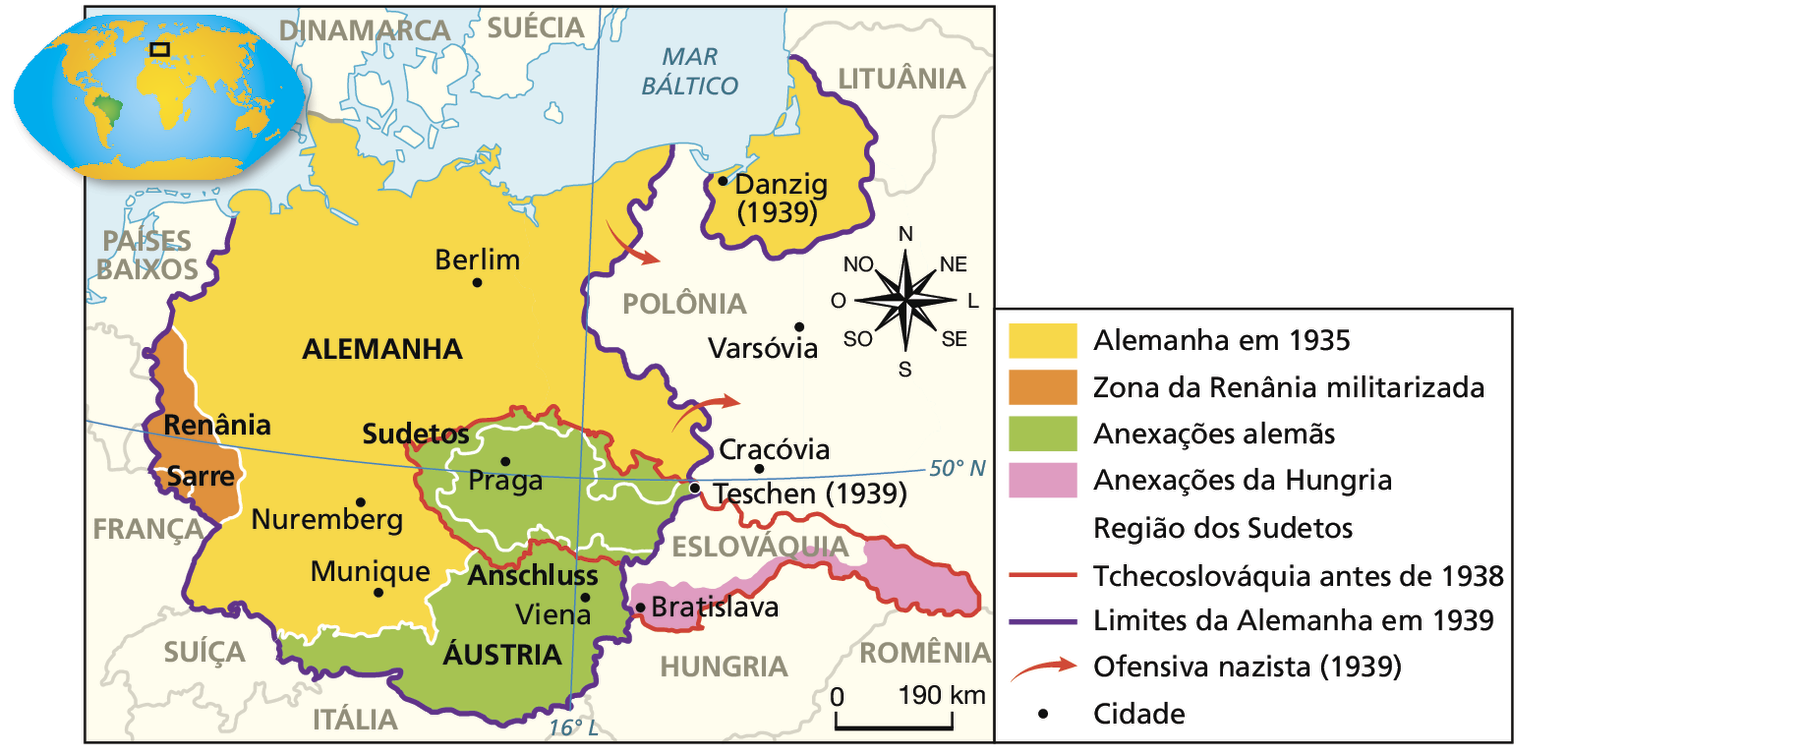 Mapa. Expansão nazista (1935-1939). Em amarelo, Alemanha em 1935, compreendendo um território um pouco maior do que o atual território alemão à leste, incluindo uma área descontínua na fronteira com a Lituânia e a Polônia, além das cidades de Berlim, Nuremberg e Munique. Em laranja, Zona da Renânia militarizada, compreendendo uma pequena porção de território à oeste da Alemanha, incluindo Sarre. Em verde, Anexações alemãs, compreendendo a Áustria (incluindo a cidade de Viena), e a Tchecoslováquia (incluindo as cidades de Praga e Teschen e a região dos Sudetos). Em rosa Anexações da Hungria, compreendendo o sul da Eslováquia, incluindo a cidade de Bratislava. Áreas com riscos diagonais indicam Região dos Sudetos, compreendendo toda a região da Tchecoslováquia fronteiriça com a Alemanha. Áreas delimitadas por uma linha vermelha indicam Tchecoslováquia antes de 1938, compreendendo os territórios das atuais República Tcheca (incluindo a região dos Sudetos e as cidades de Praga e Teschen), da Eslováquia (incluindo a cidade de Bratislava) e uma pequena porção da Ucrânia. Uma linha roxa indica Limites da Alemanha em 1939, compreendendo todo o território alemão anterior a 1935, a Renânia, a Áustria, a porção oeste da Tchecoslováquia, incluindo a região dos Sudetos, e uma porção descontínua à leste da Alemanha atual, incluindo a cidade de Danzig. Uma seta vermelha indica Ofensiva nazista (1939), partindo do leste da Alemanha em direção à Polônia. No canto direito, rosa dos ventos e escala de 0 a 190 quilômetros.